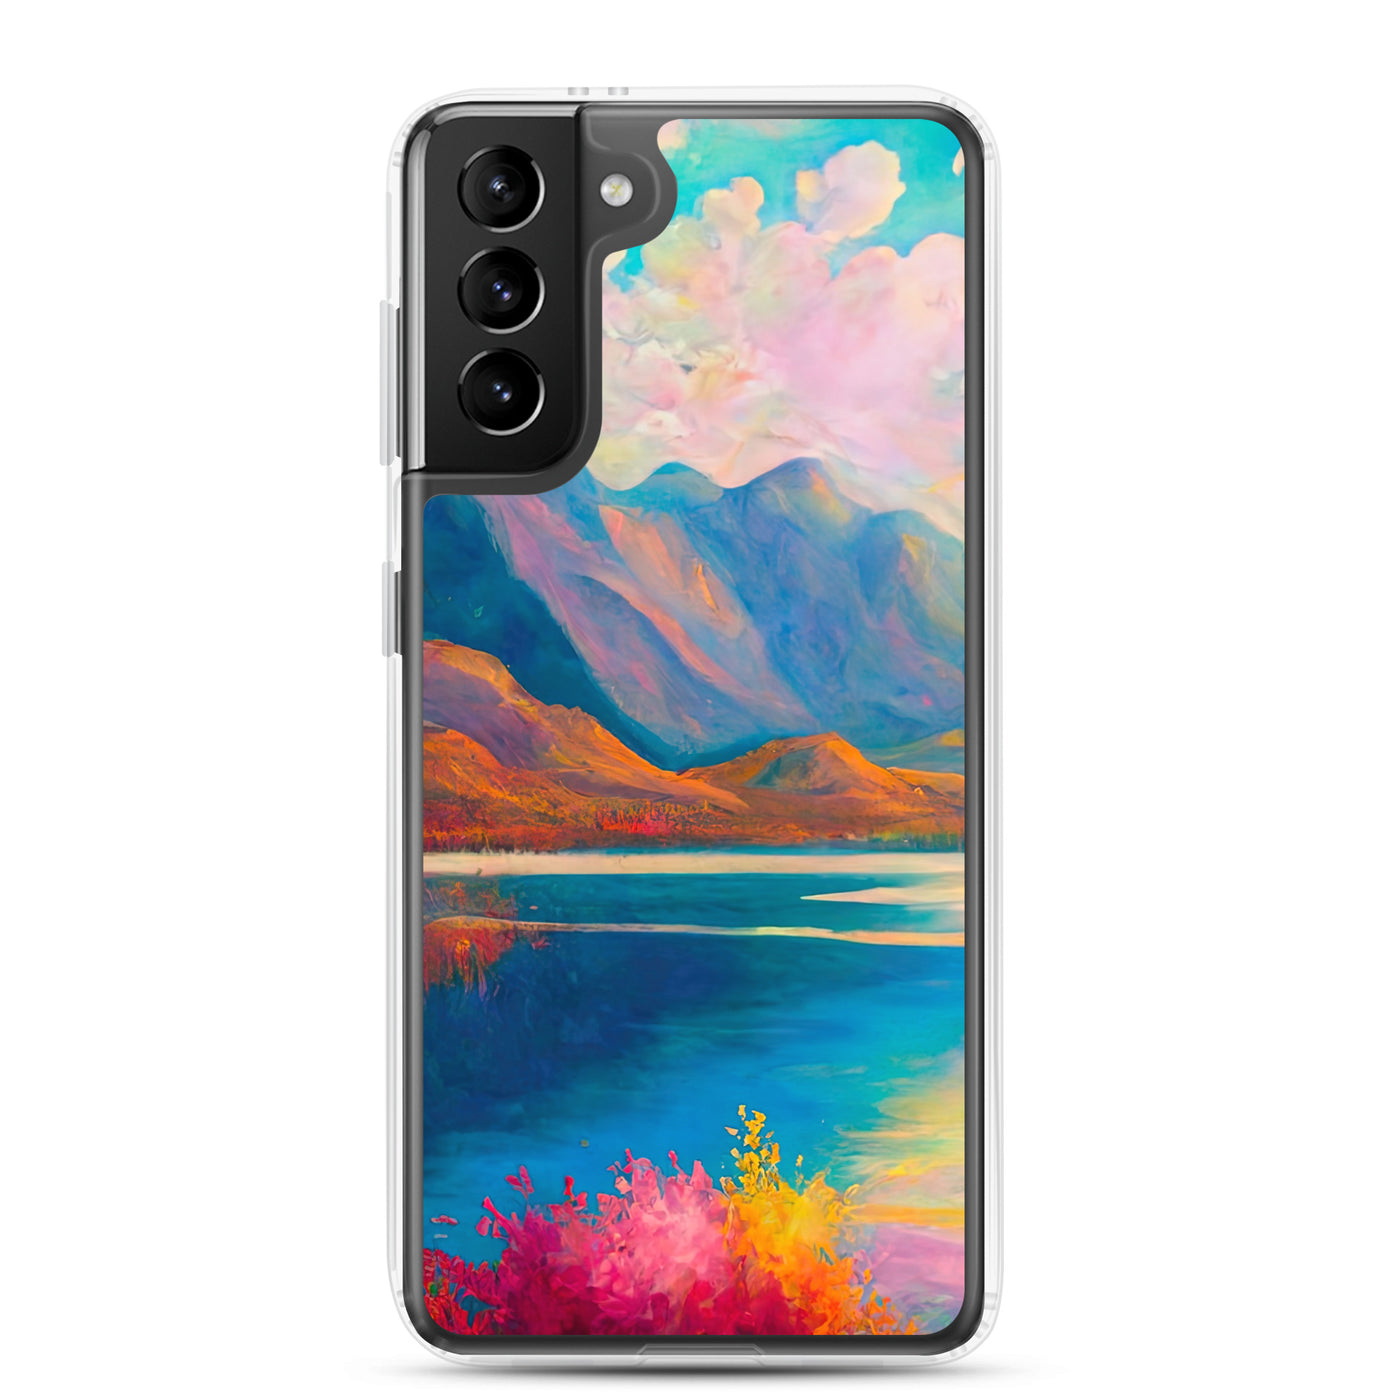 Berglandschaft und Bergsee - Farbige Ölmalerei - Samsung Schutzhülle (durchsichtig) berge xxx Samsung Galaxy S21 Plus